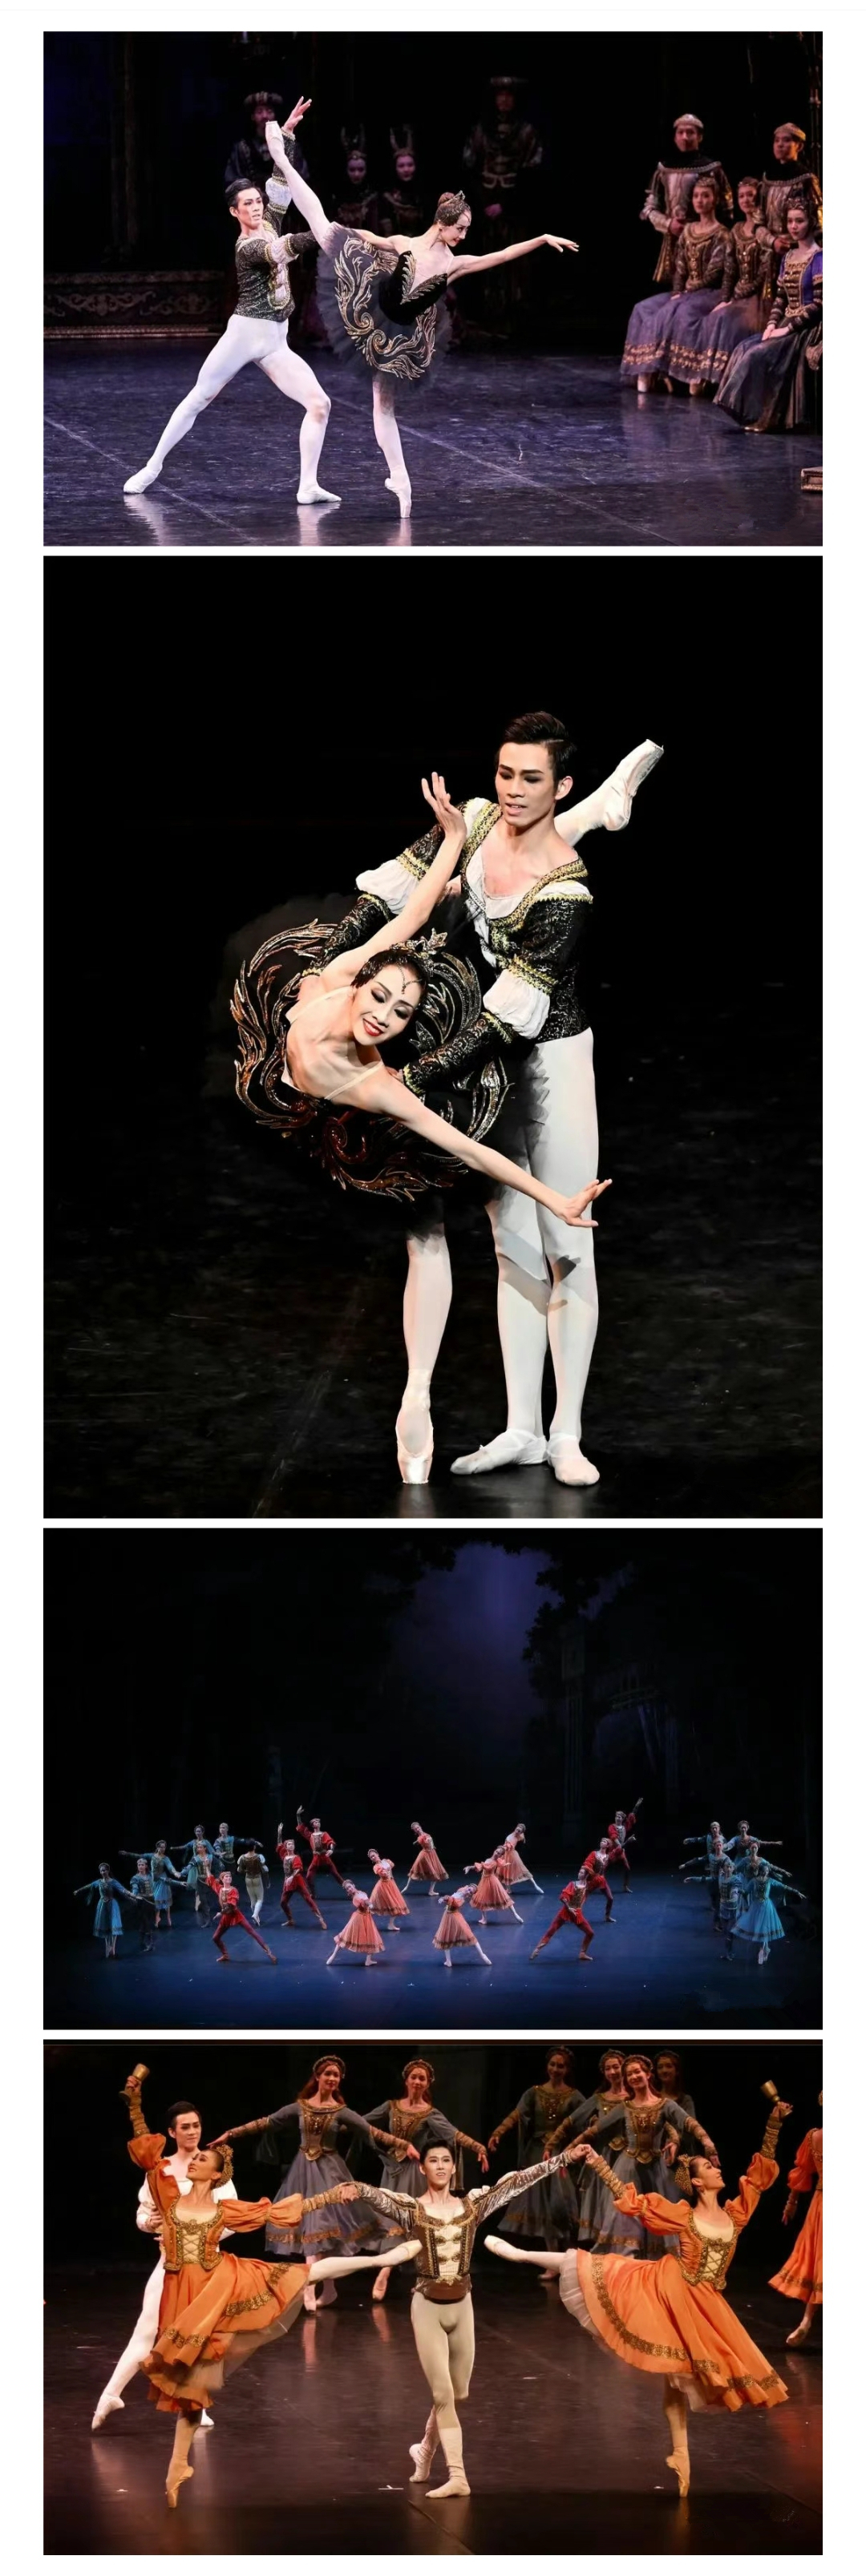 【北京】中央芭蕾舞团 芭蕾舞剧《天鹅湖》